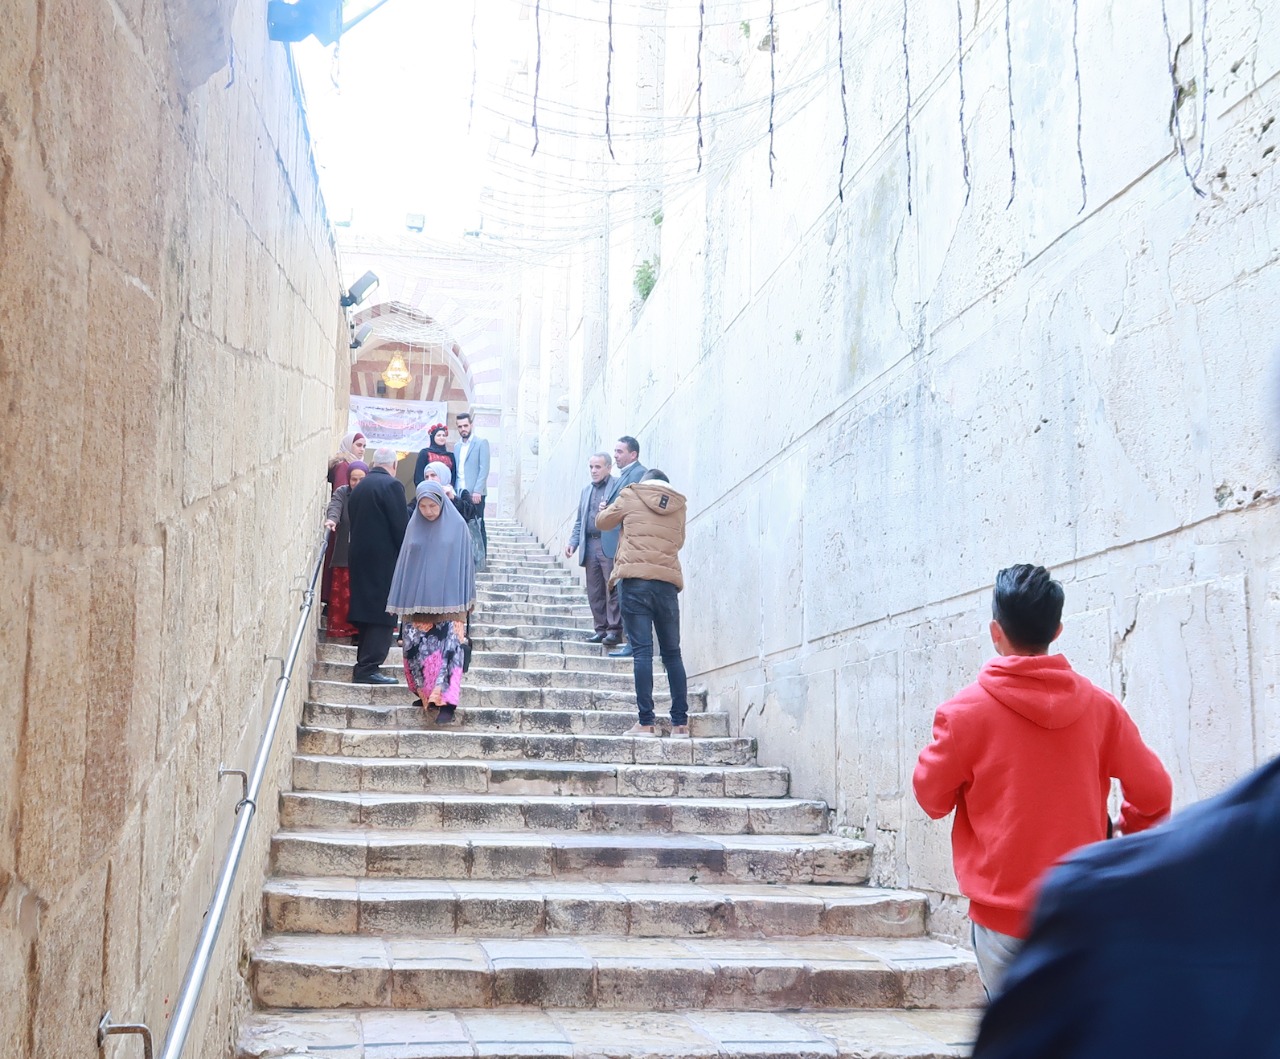 Harga Tour Aqsa Jordan Mesir